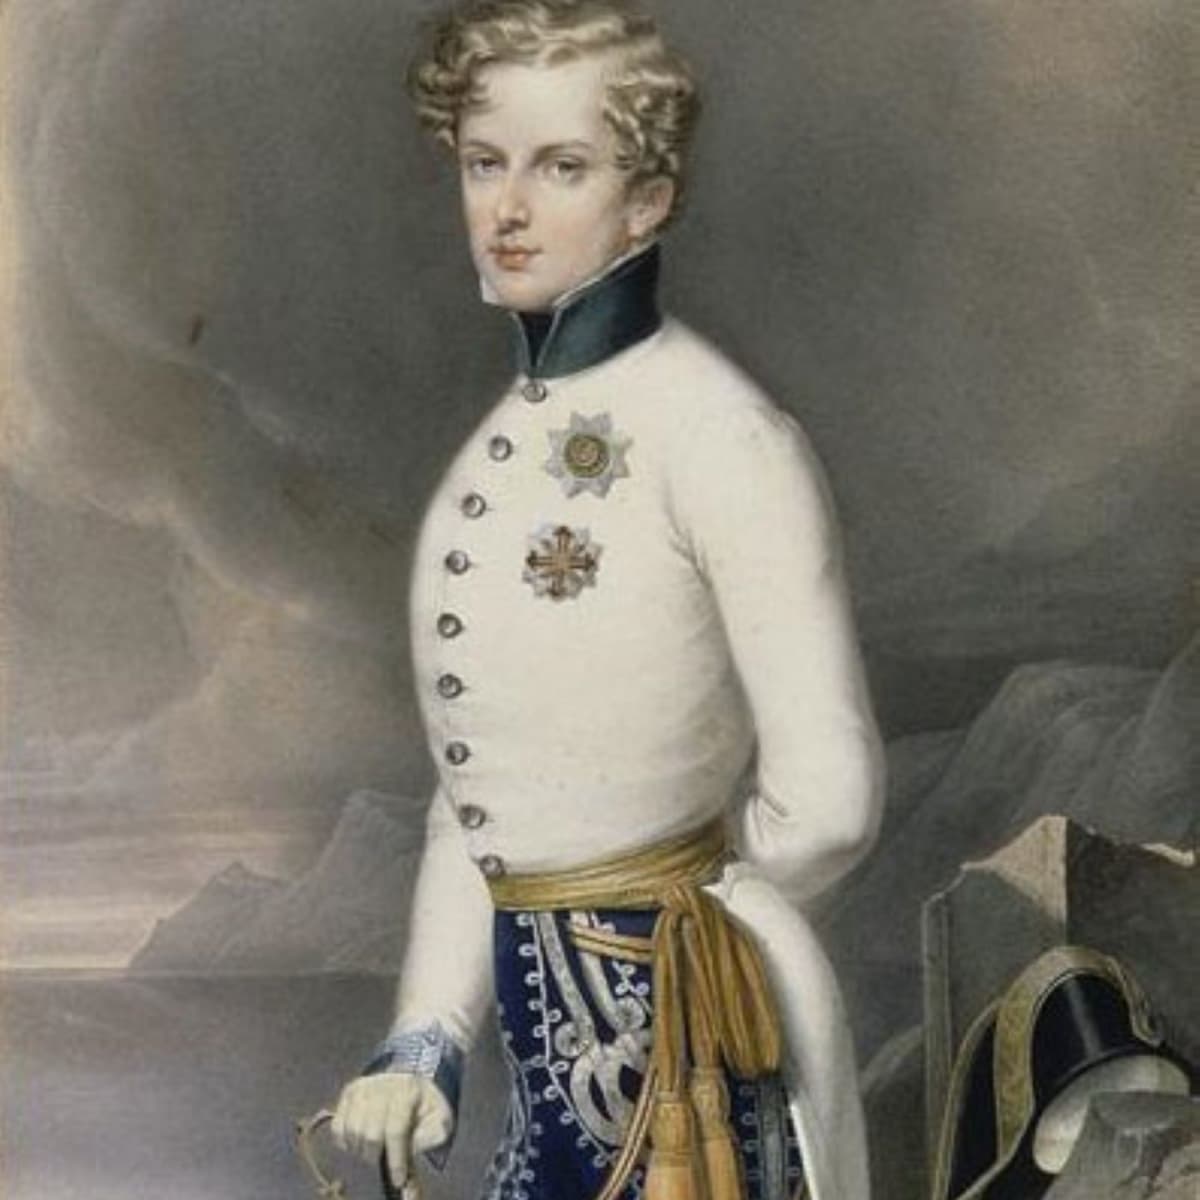 The Imperial Family Charles-Louis-Napoleon Bonaparte (Napoleon III